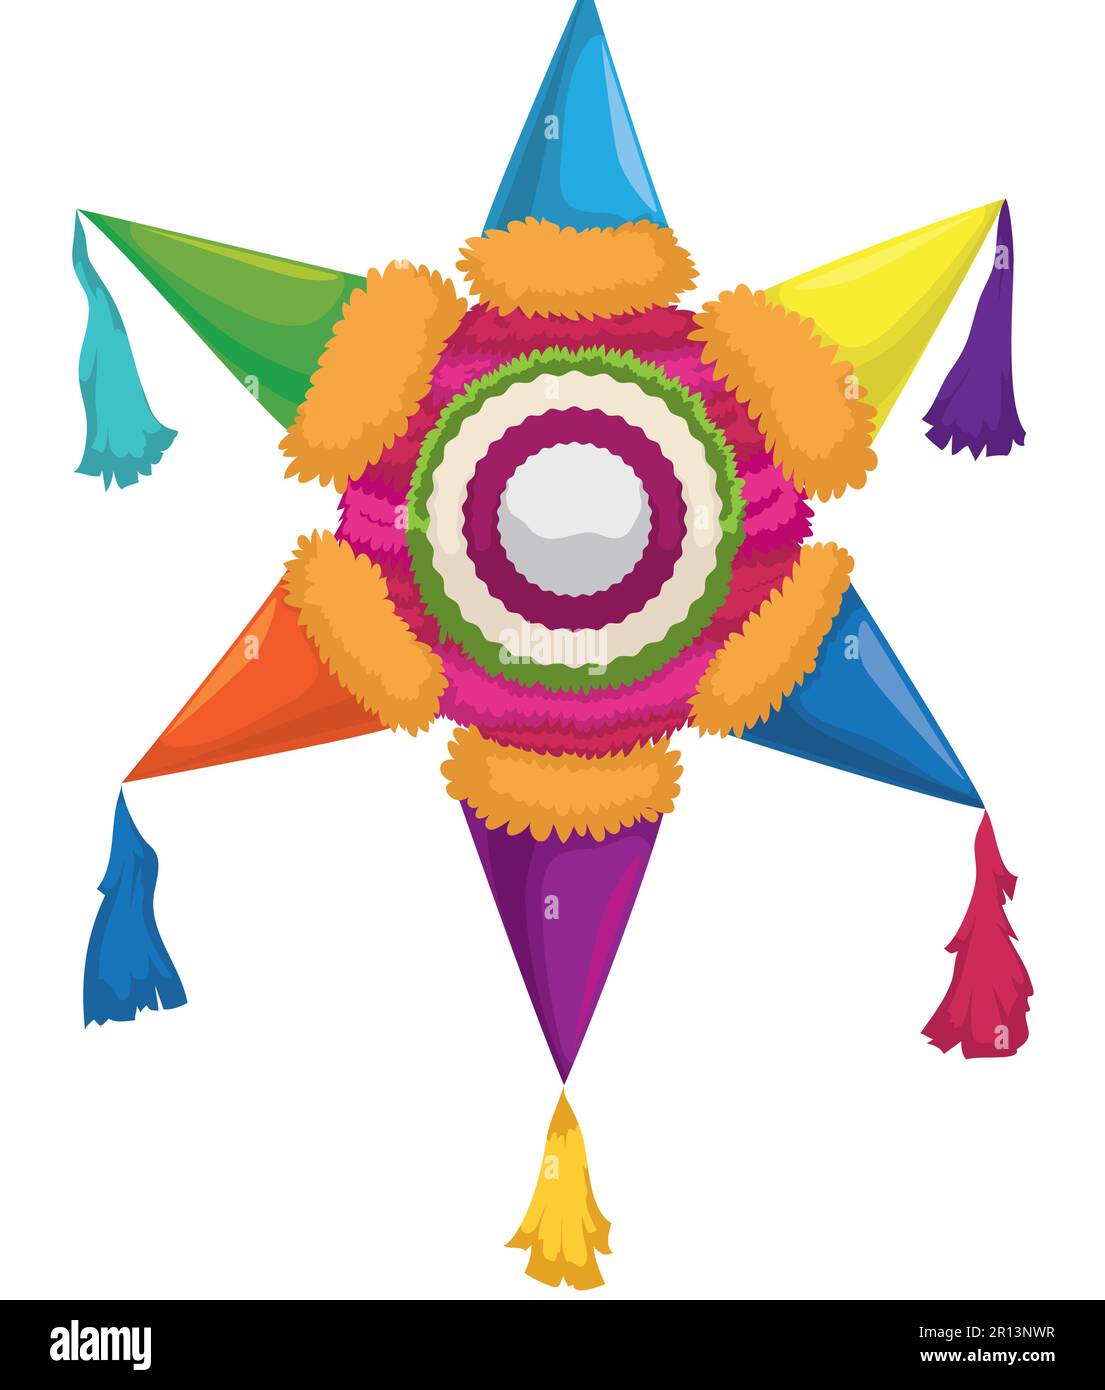 Pinata traditionnel et coloré en forme d'étoile, fabriqué avec une machée en papier dans un style de dessin animé. Illustration de Vecteur